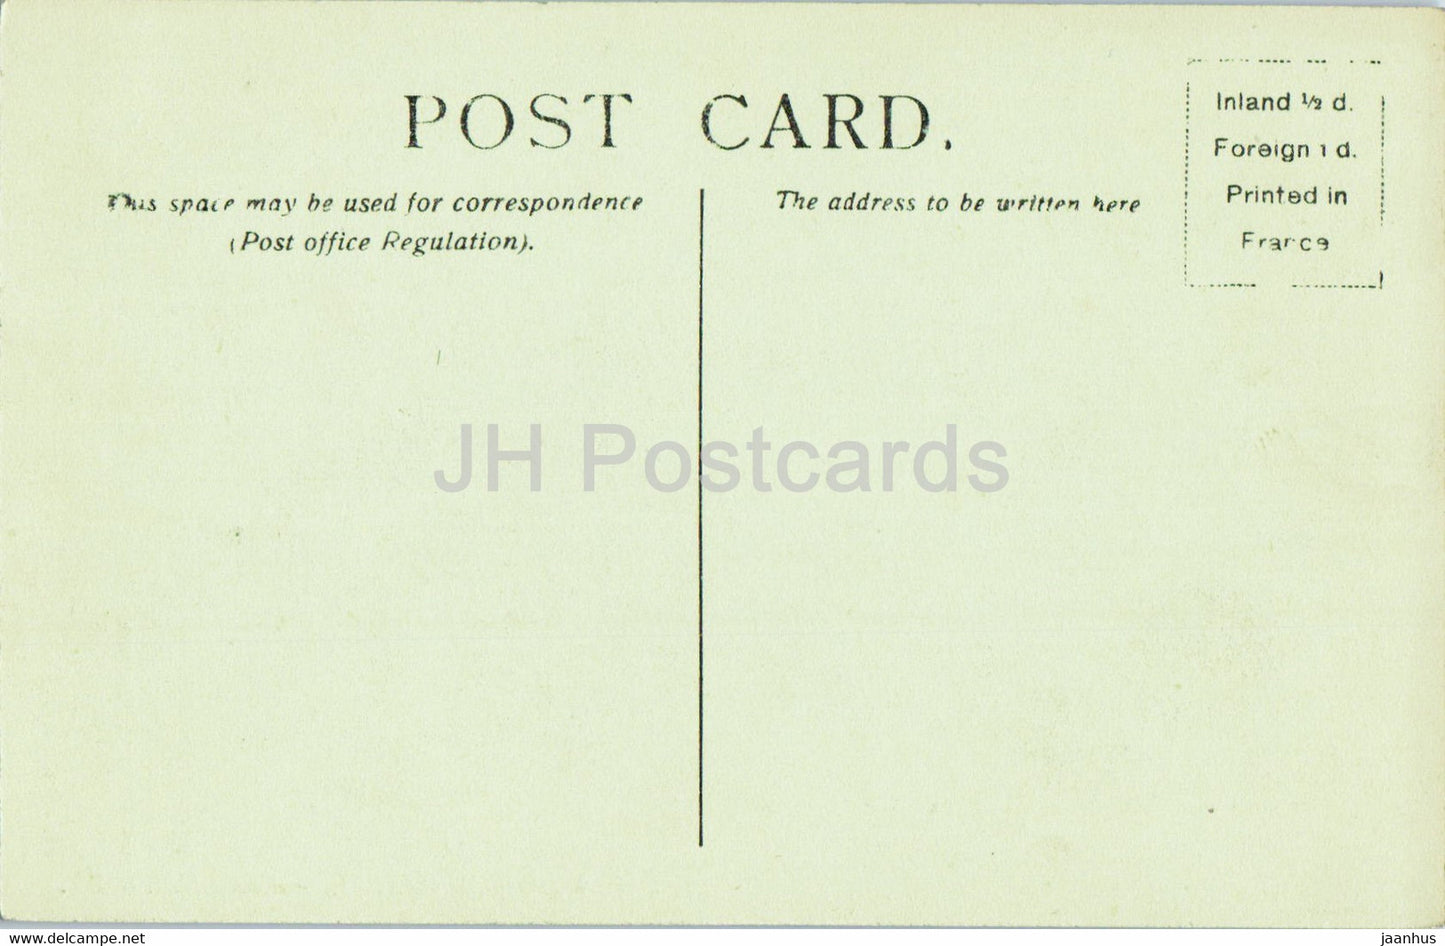 Windsor Castle - Castle Hill - 904 - old postcard - England - United Kingdom - unused